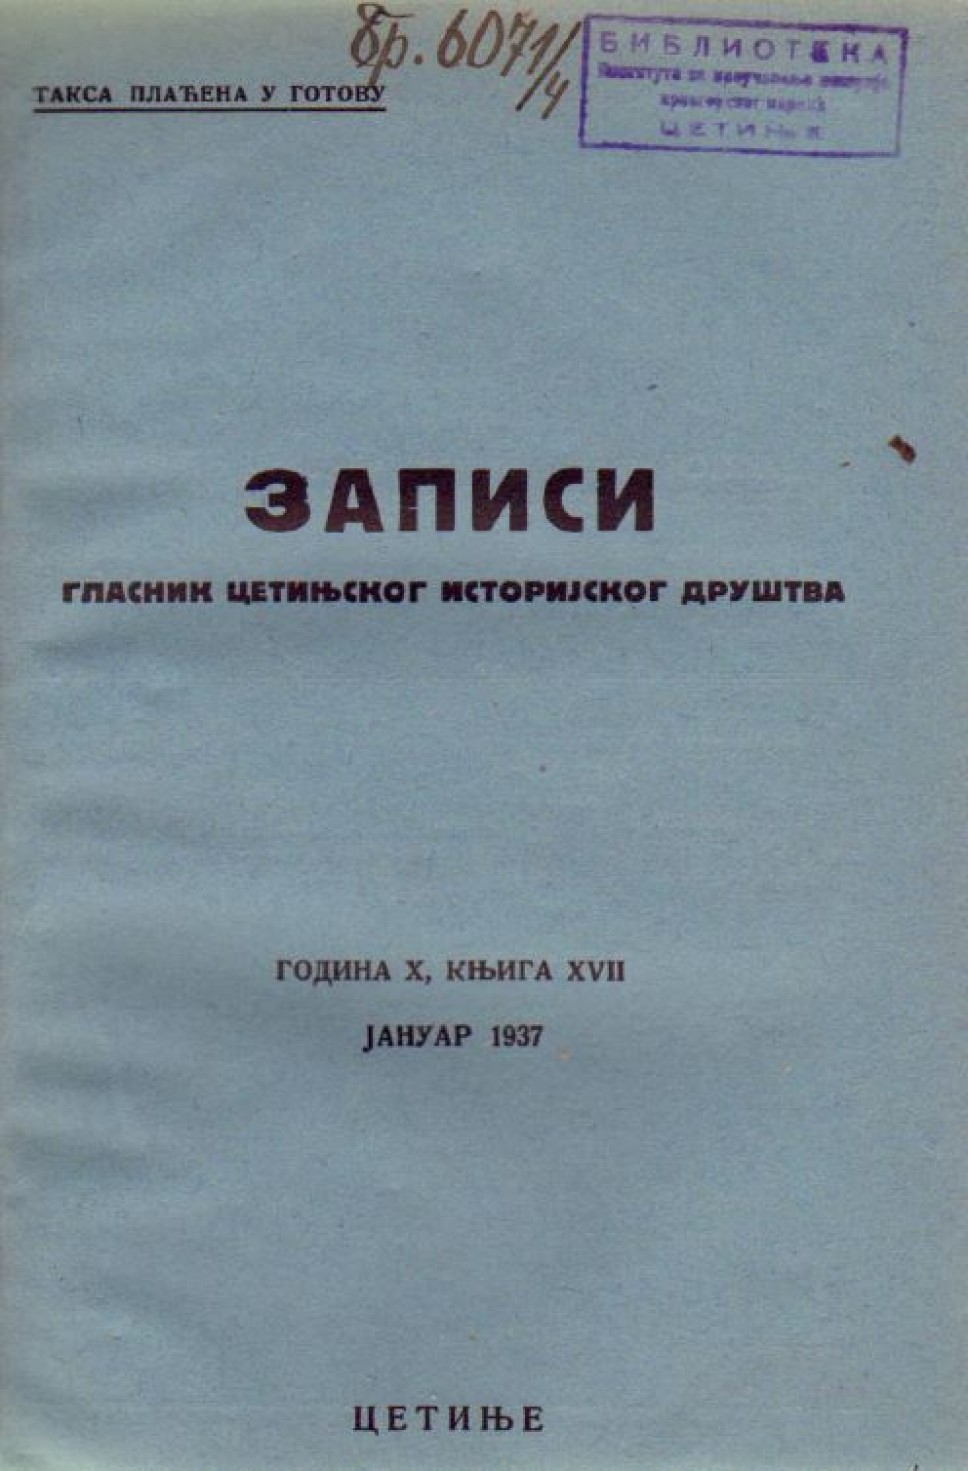 Zapisi 1937